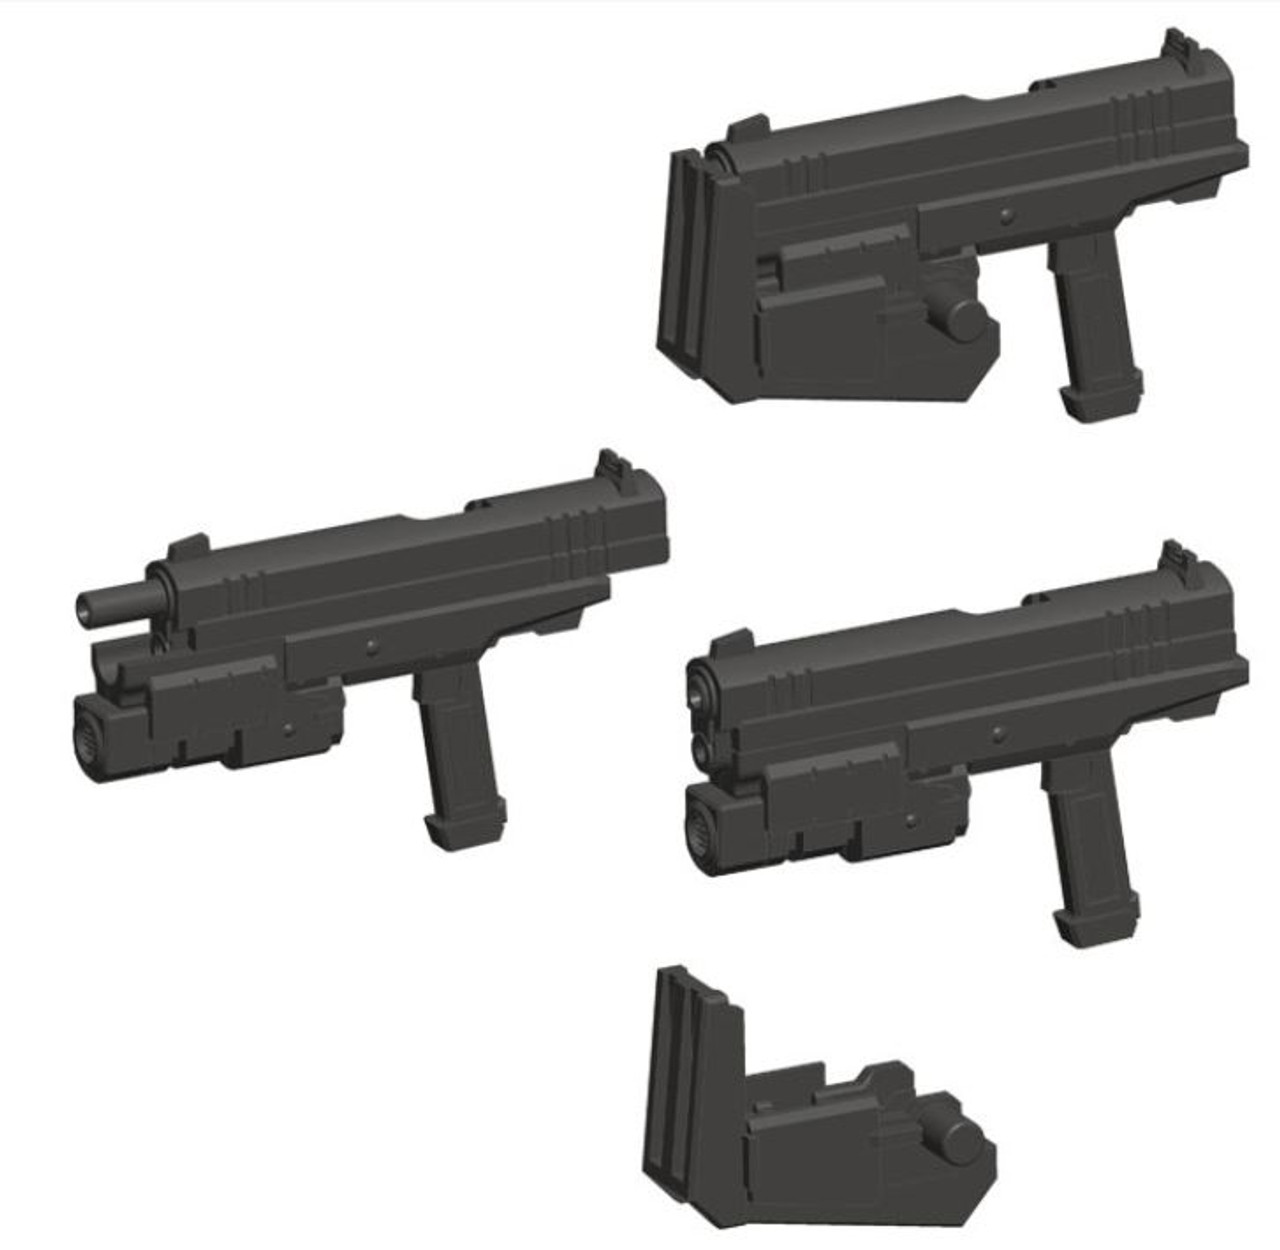 MSG Weapon Unit 24 Handgun